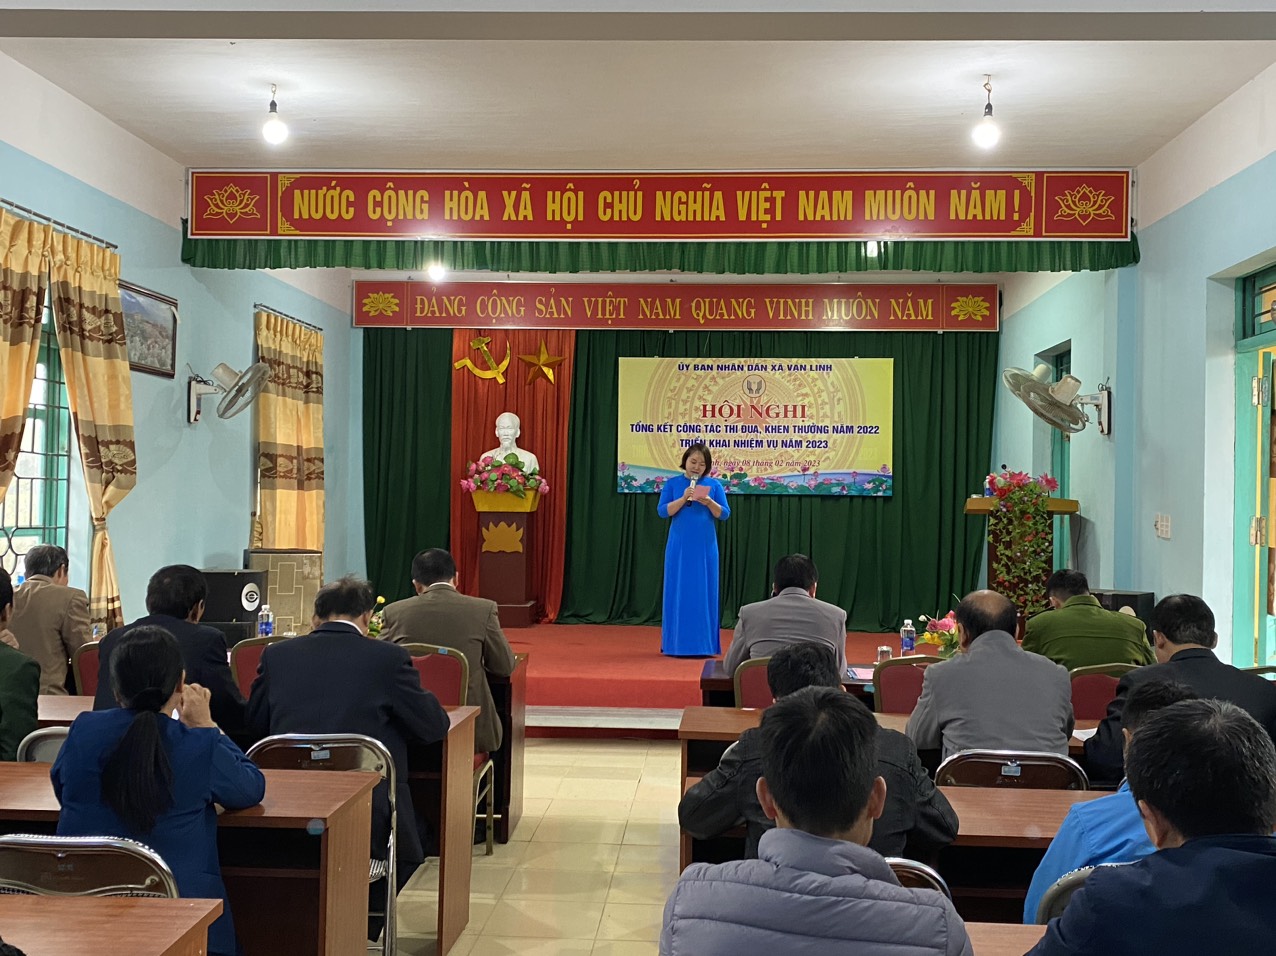 UBND xã Vạn Linh tổ chức Hội nghị công tác thi đua khen thưởng năm 2022, phương hướng, nhiệm vụ năm 2023